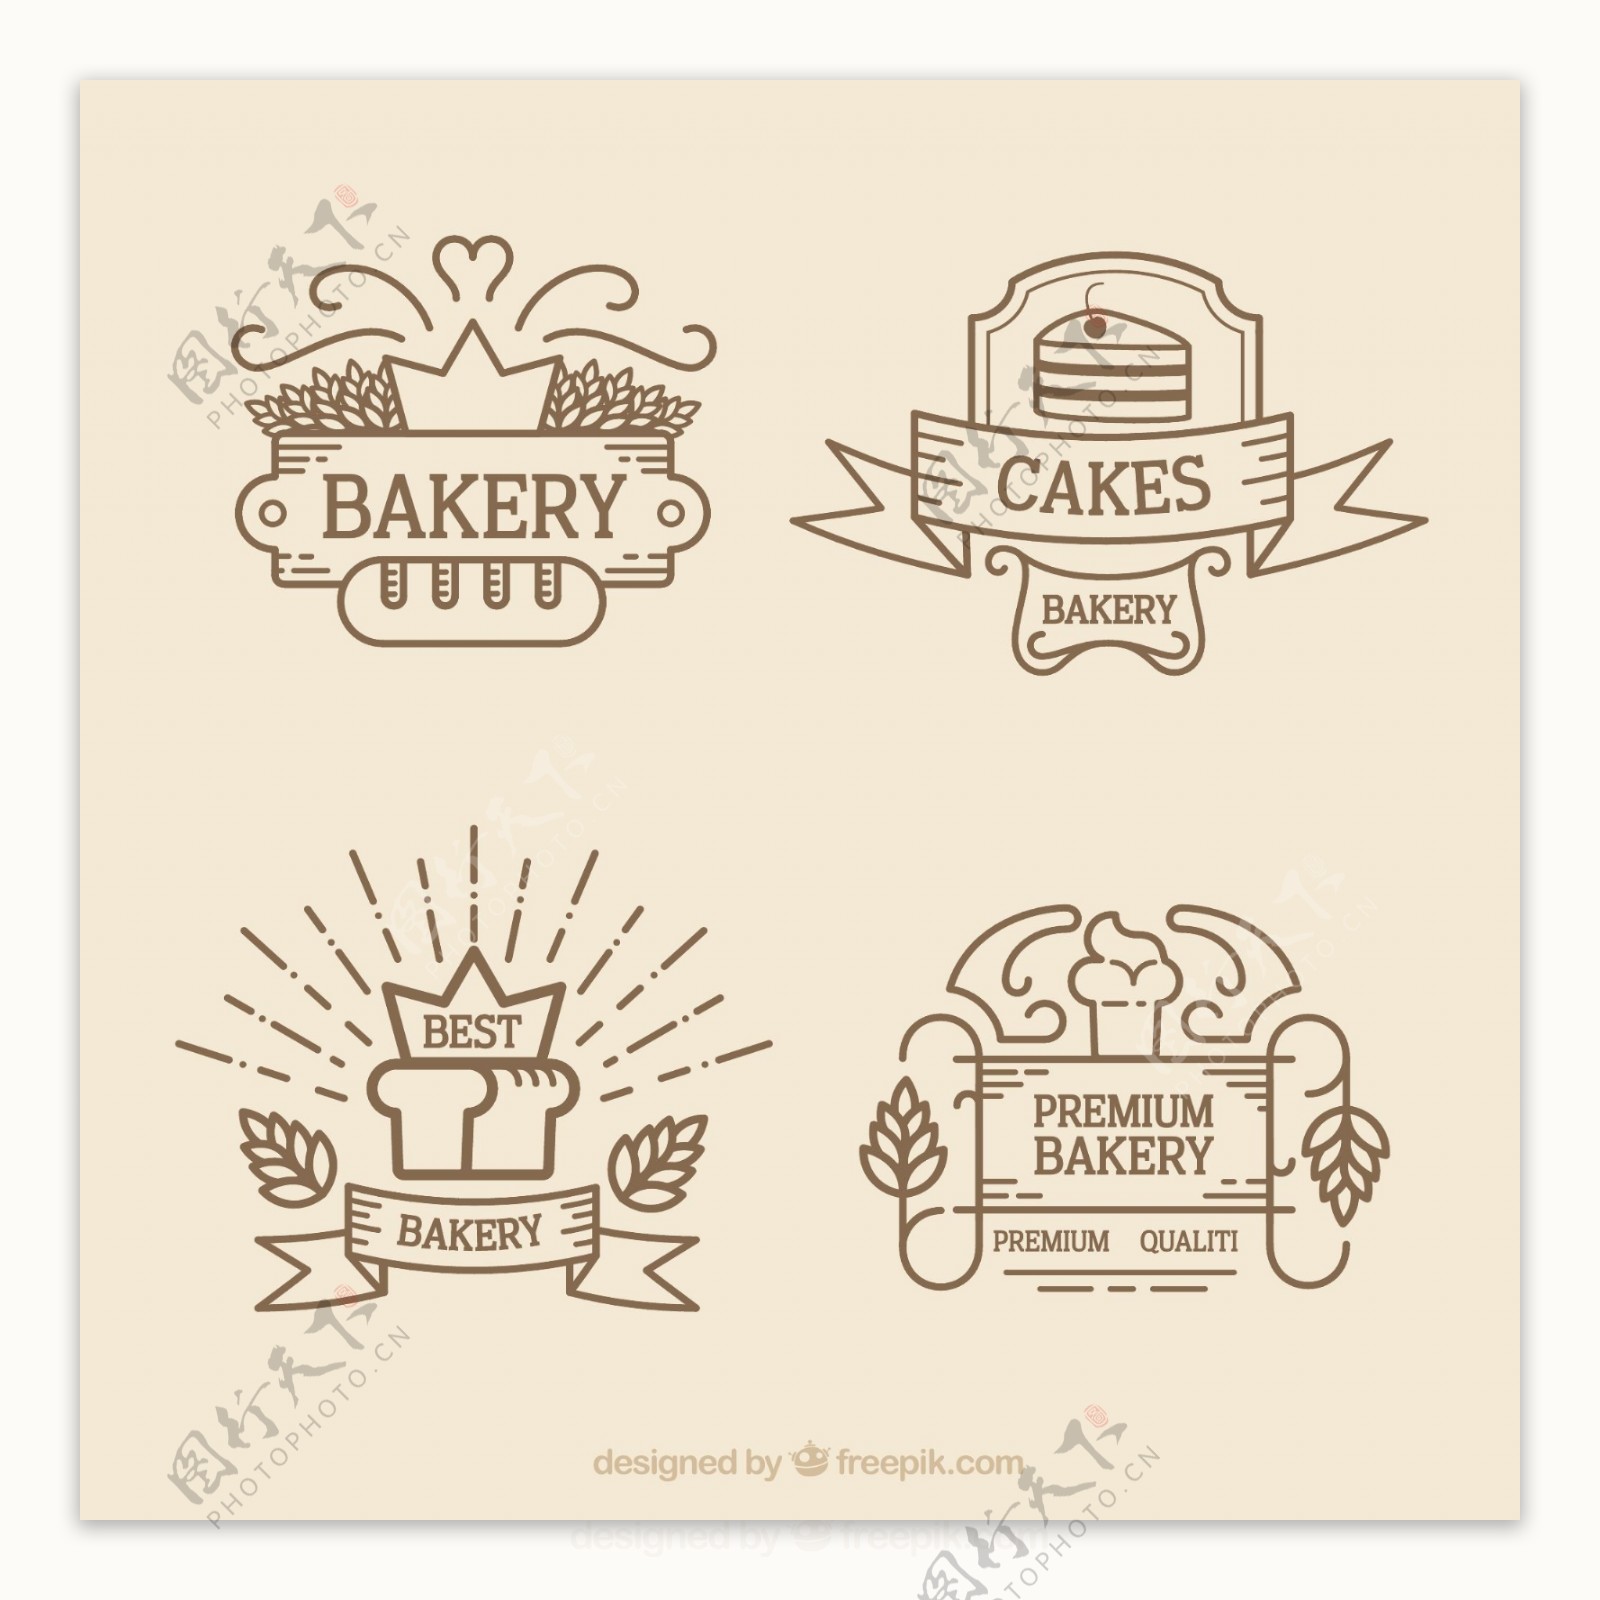 概述了面包店的标志